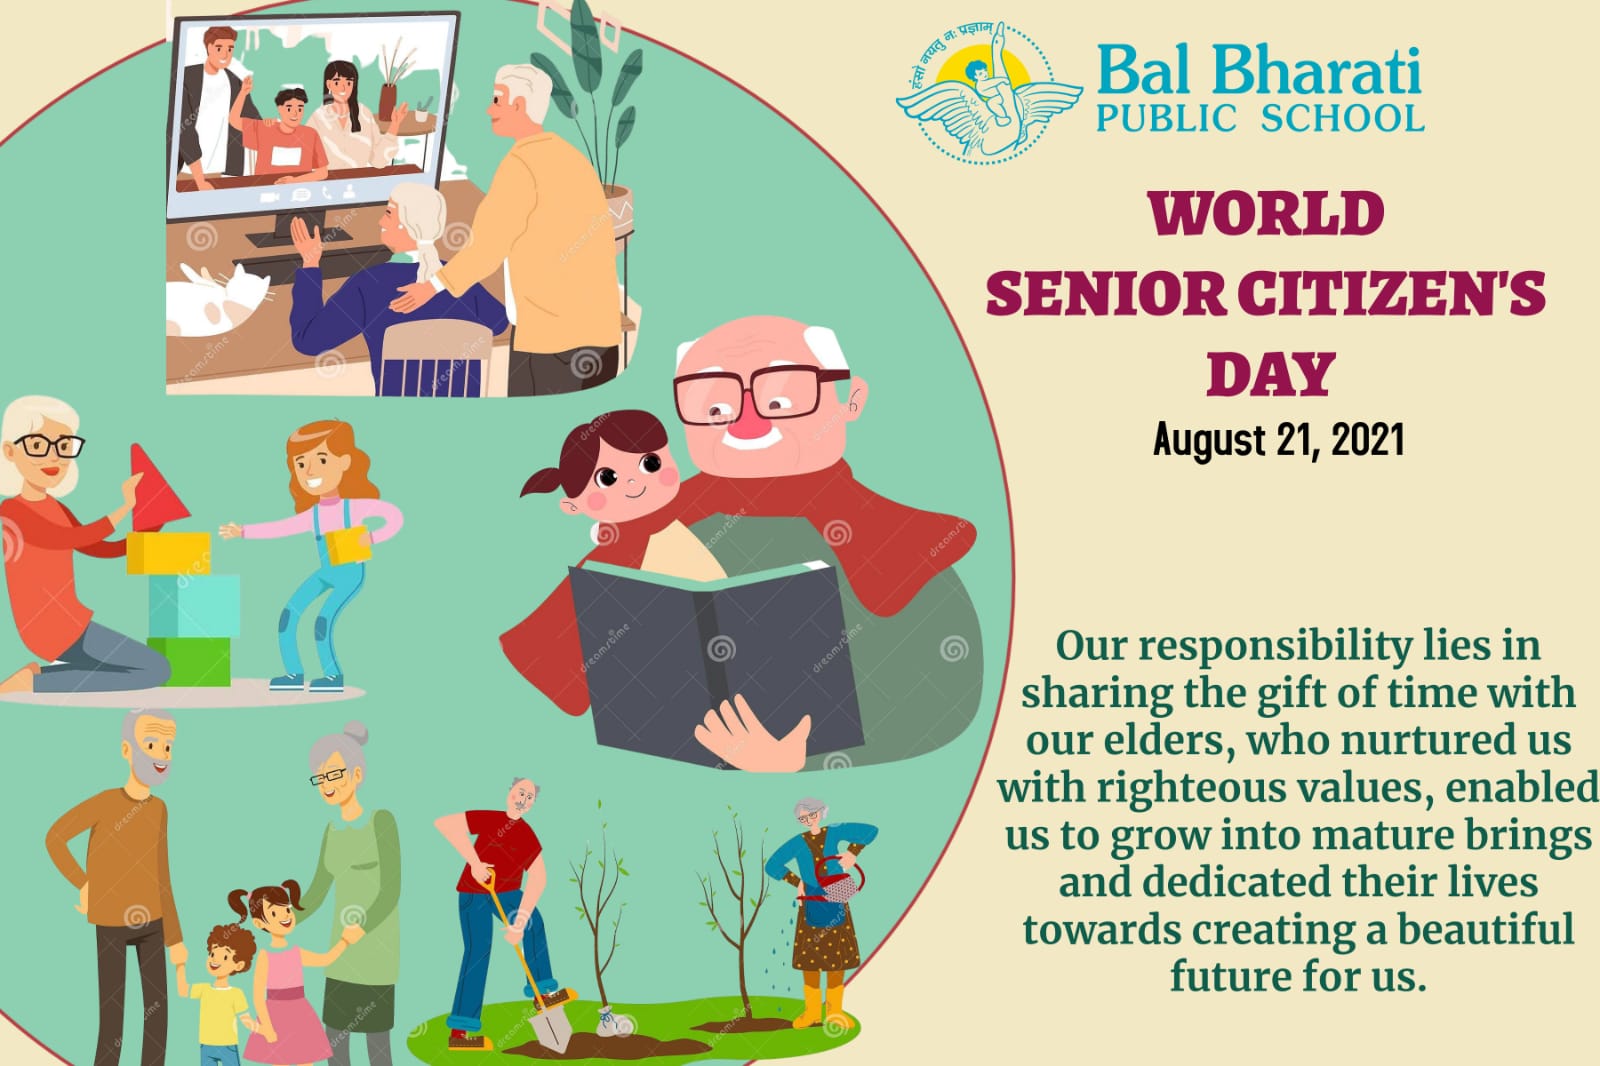 World Senior Citizen's Day - August 21, 2021